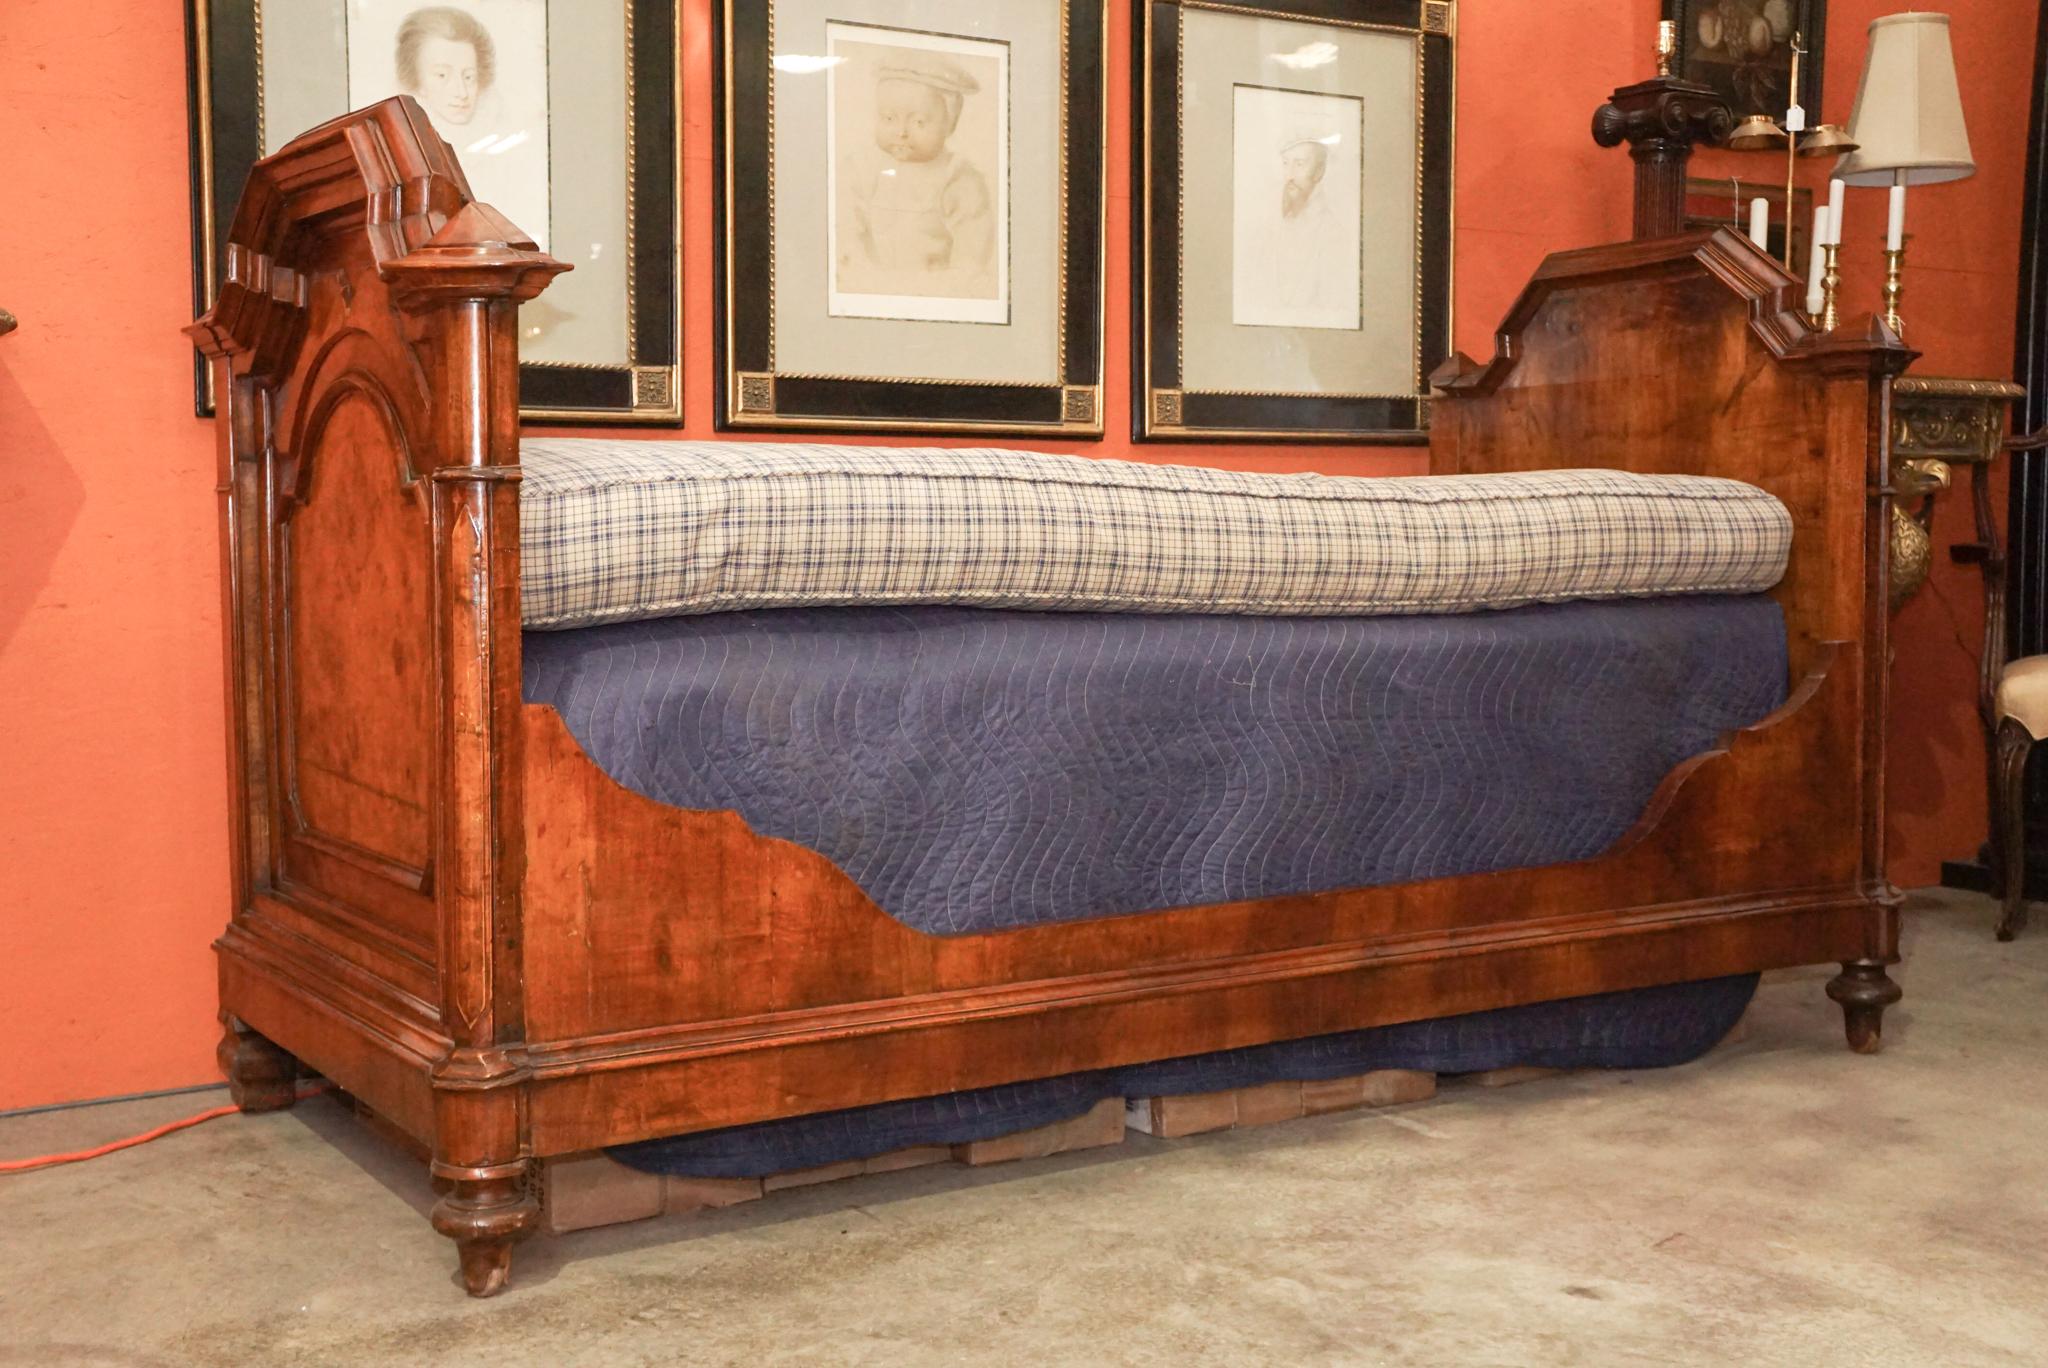 Diese  Tagesbett oder Sofa war  wurde ursprünglich um 1870 in Frankreich im Stil von Napoleon III. hergestellt und besteht aus Nussbaum und genoppten Nussbaumfurnieren, die die Holzauswahl und die Maserung eindrucksvoll zur Geltung bringen. Große